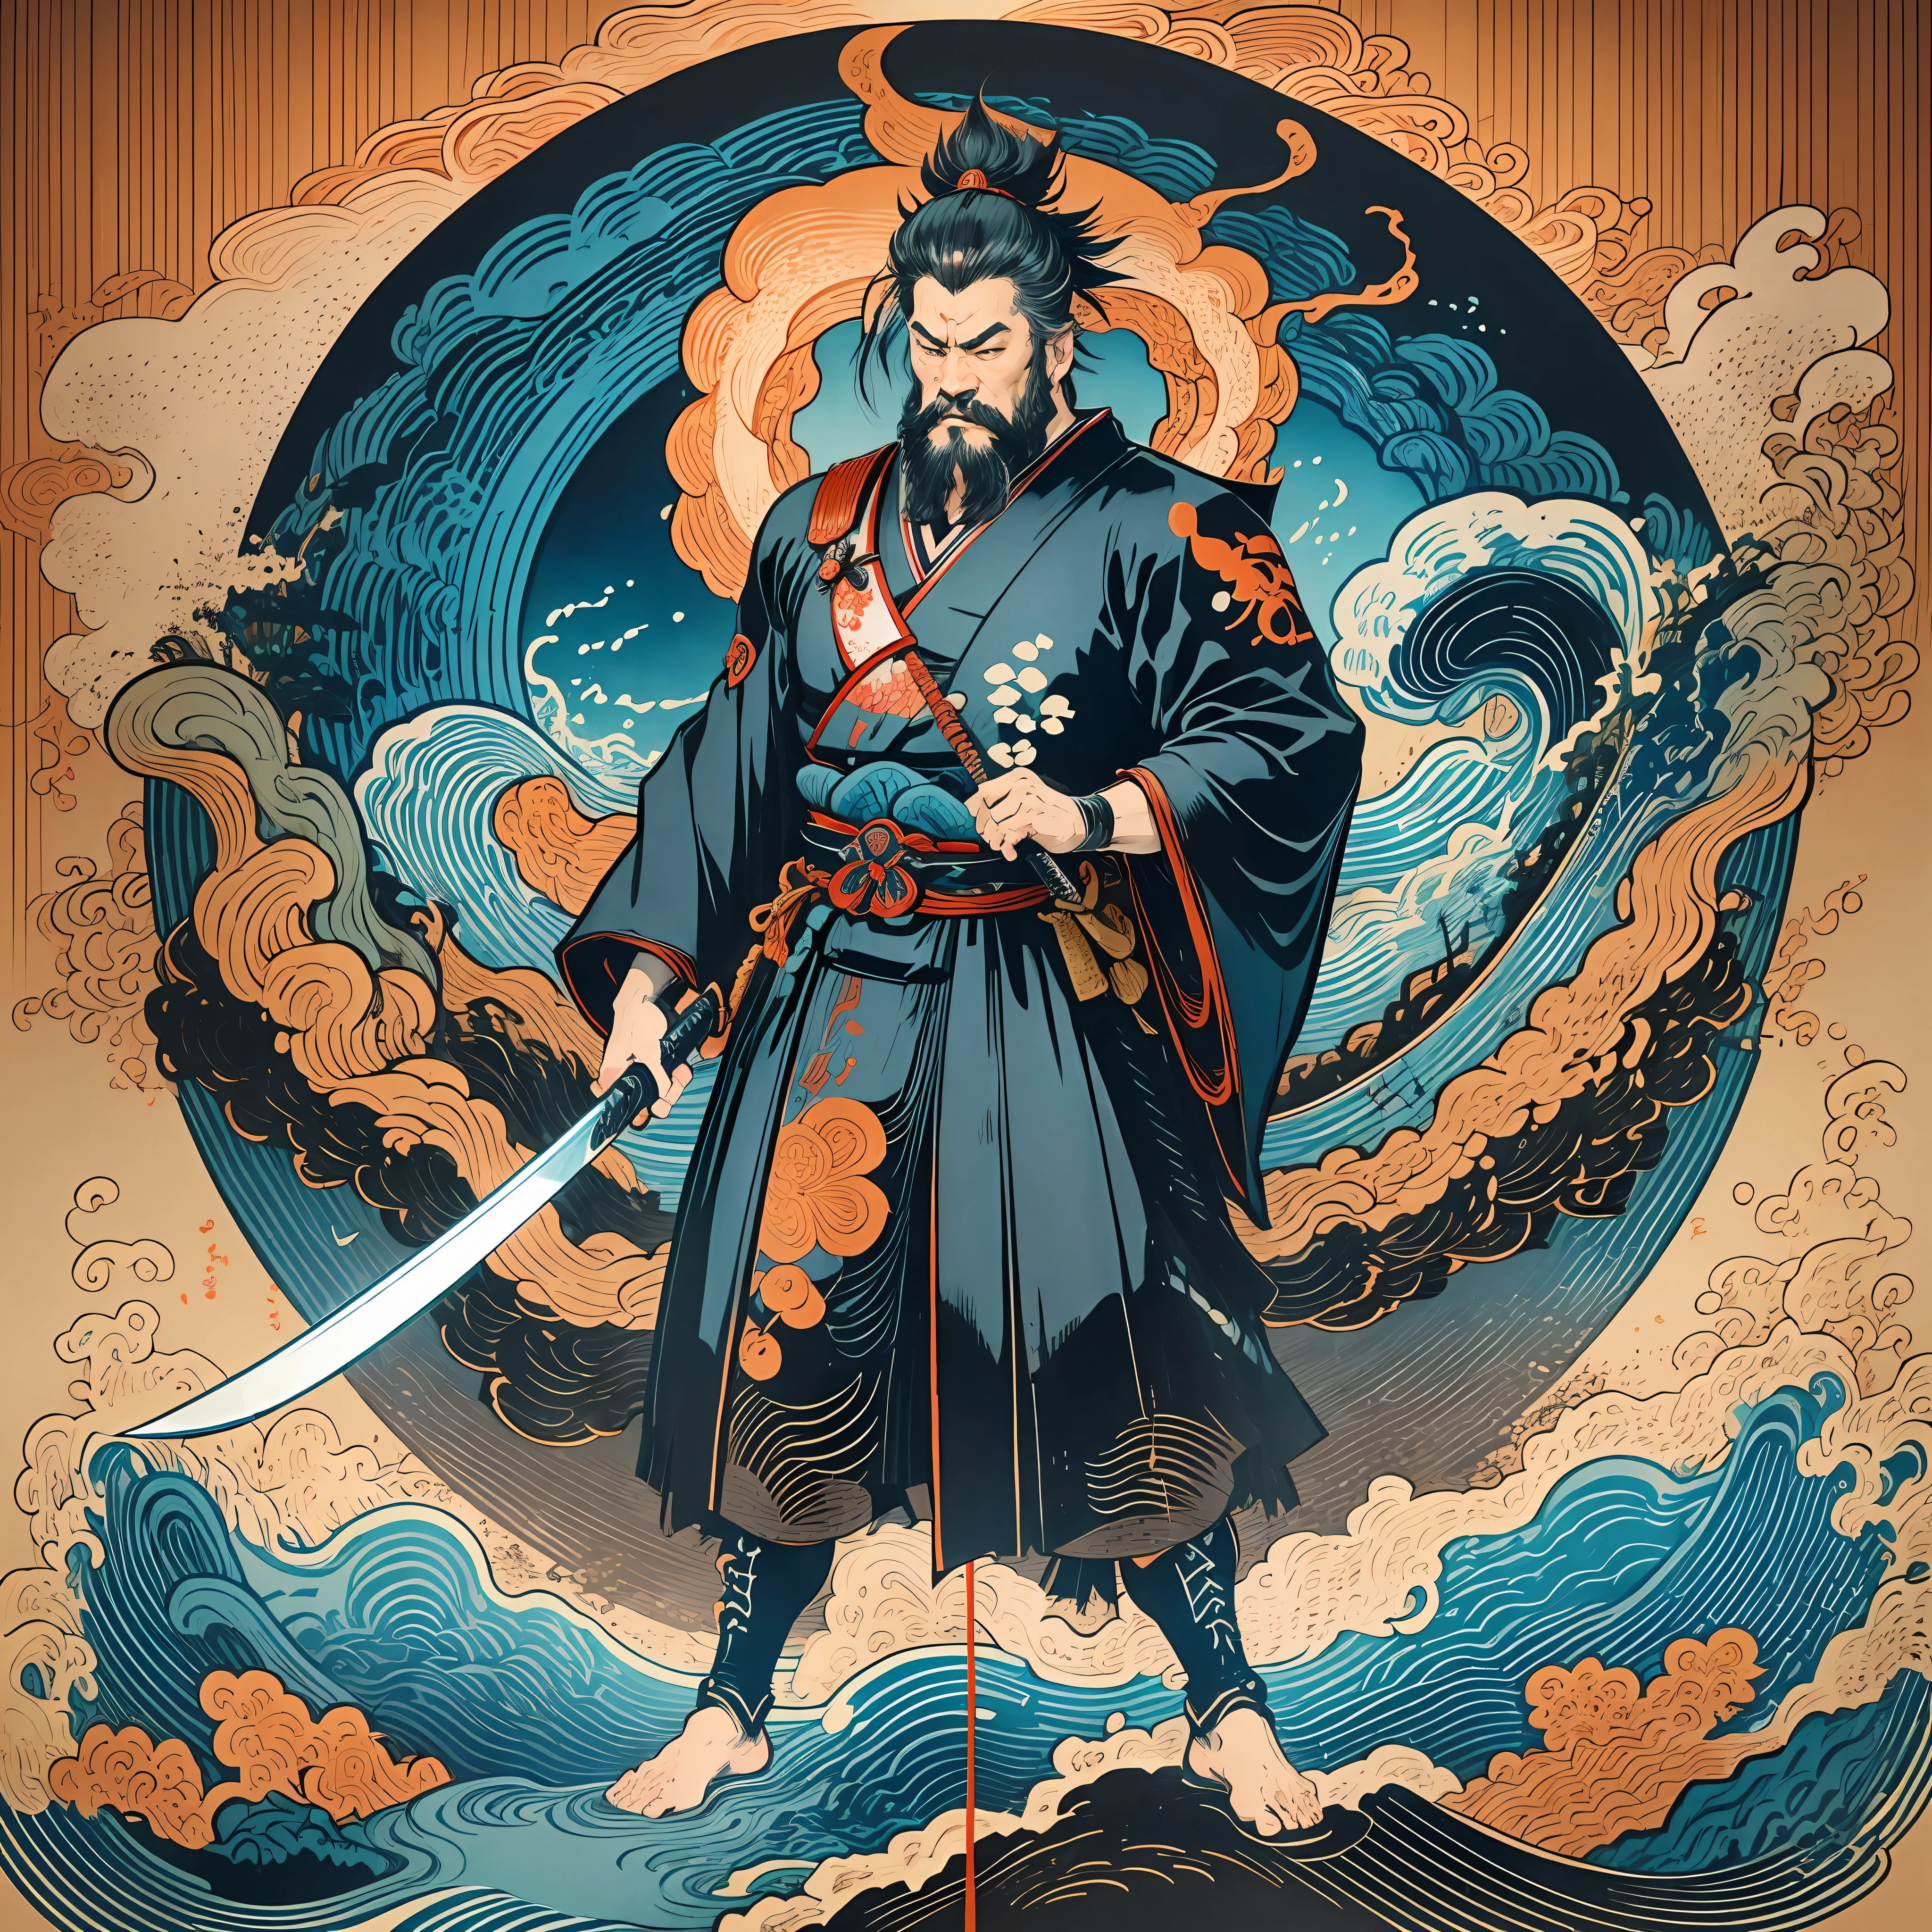 É uma pintura de corpo inteiro com cores naturais com desenhos de linhas no estilo Katsushika Hokusai.. O espadachim Miyamoto Musashi tem um corpo grande como um homem forte. Samurais do Japão. Com uma expressão digna, mas viril, de determinação, ele enfrenta espíritos malignos. Ele tem cabelo curto preto e um curto, barba aparada. A parte superior de seu corpo está coberta por um quimono preto e seu hakama vai até os joelhos.. Na mão direita ele segura uma espada japonesa com uma parte de espada mais longa. na mais alta qualidade, obra-prima de alta resolução estilo ukiyo-e relâmpago e chamas giratórias. Entre eles, Miyamoto Musashi está de costas retas, De frente.